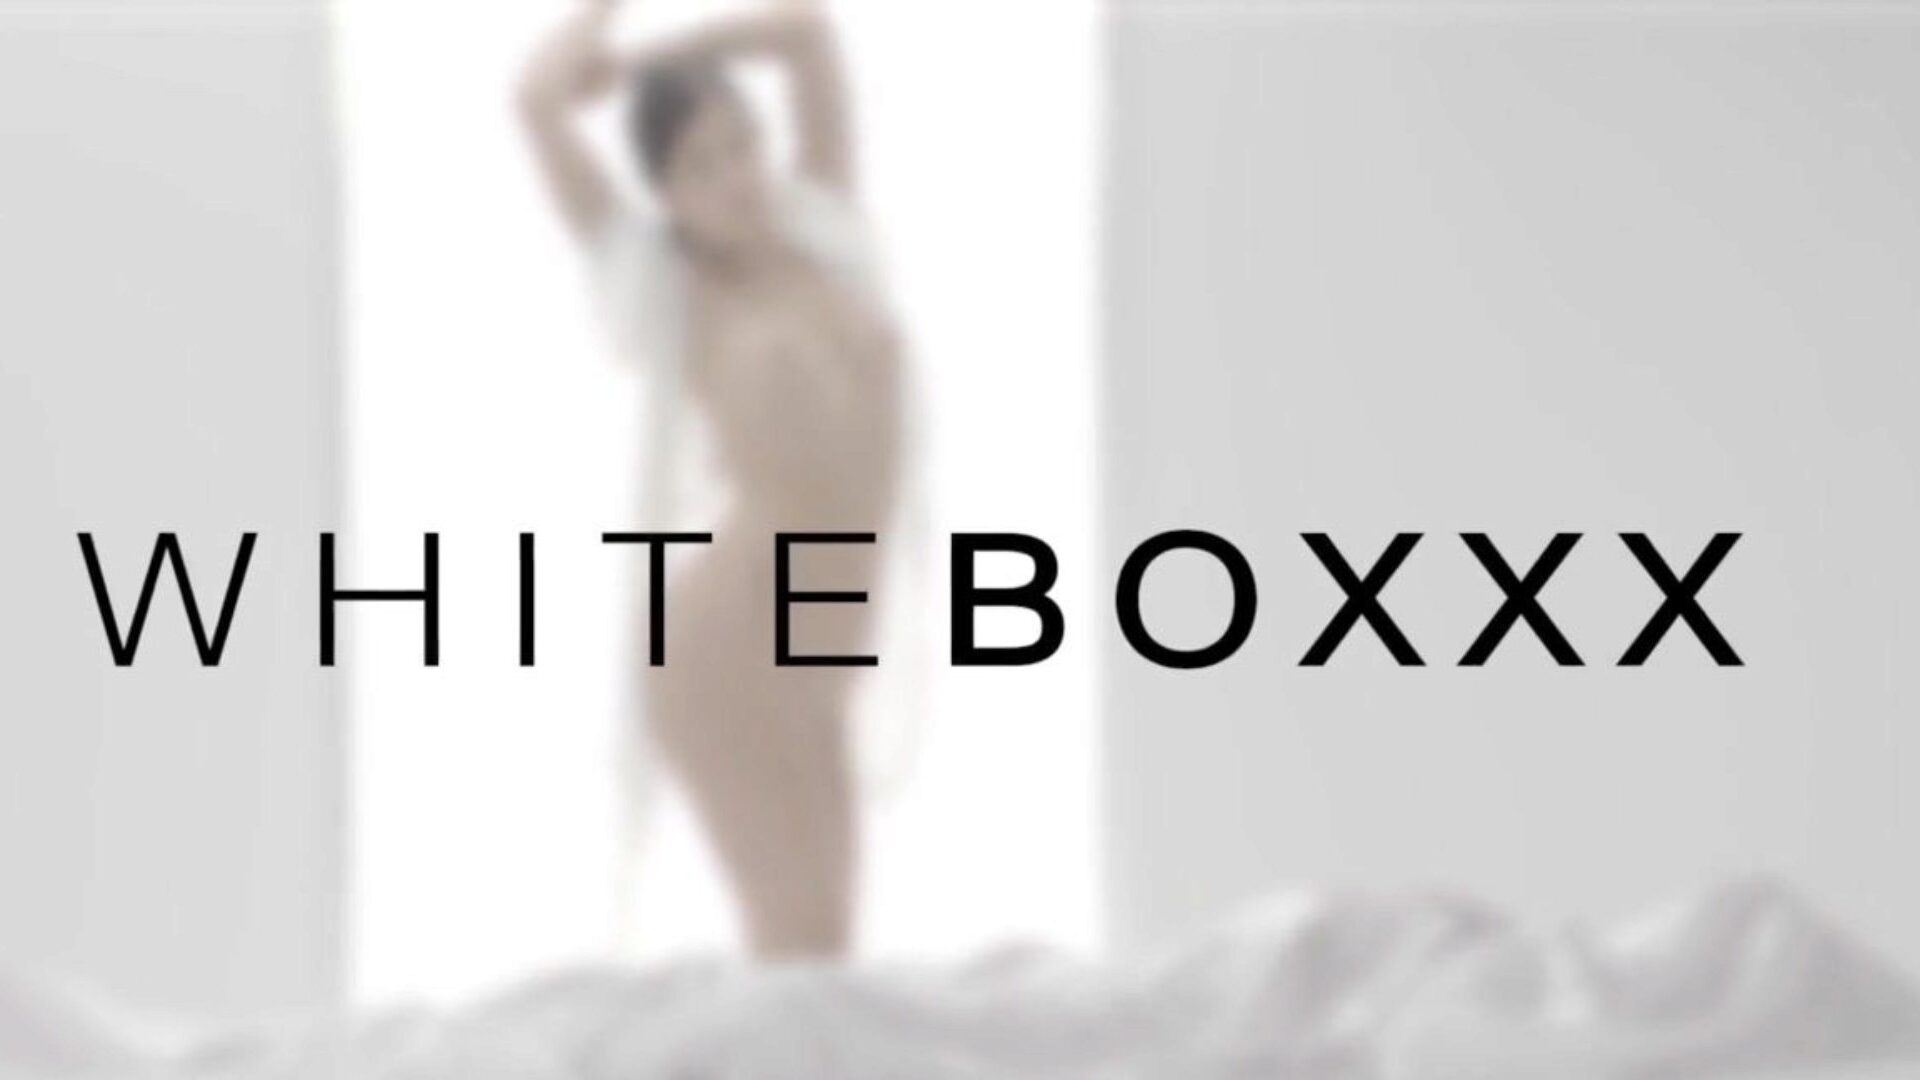 white boxxx - gorące nastolatki apolonia lapiedra i zazie skymm dzielą się swoim kochankiem